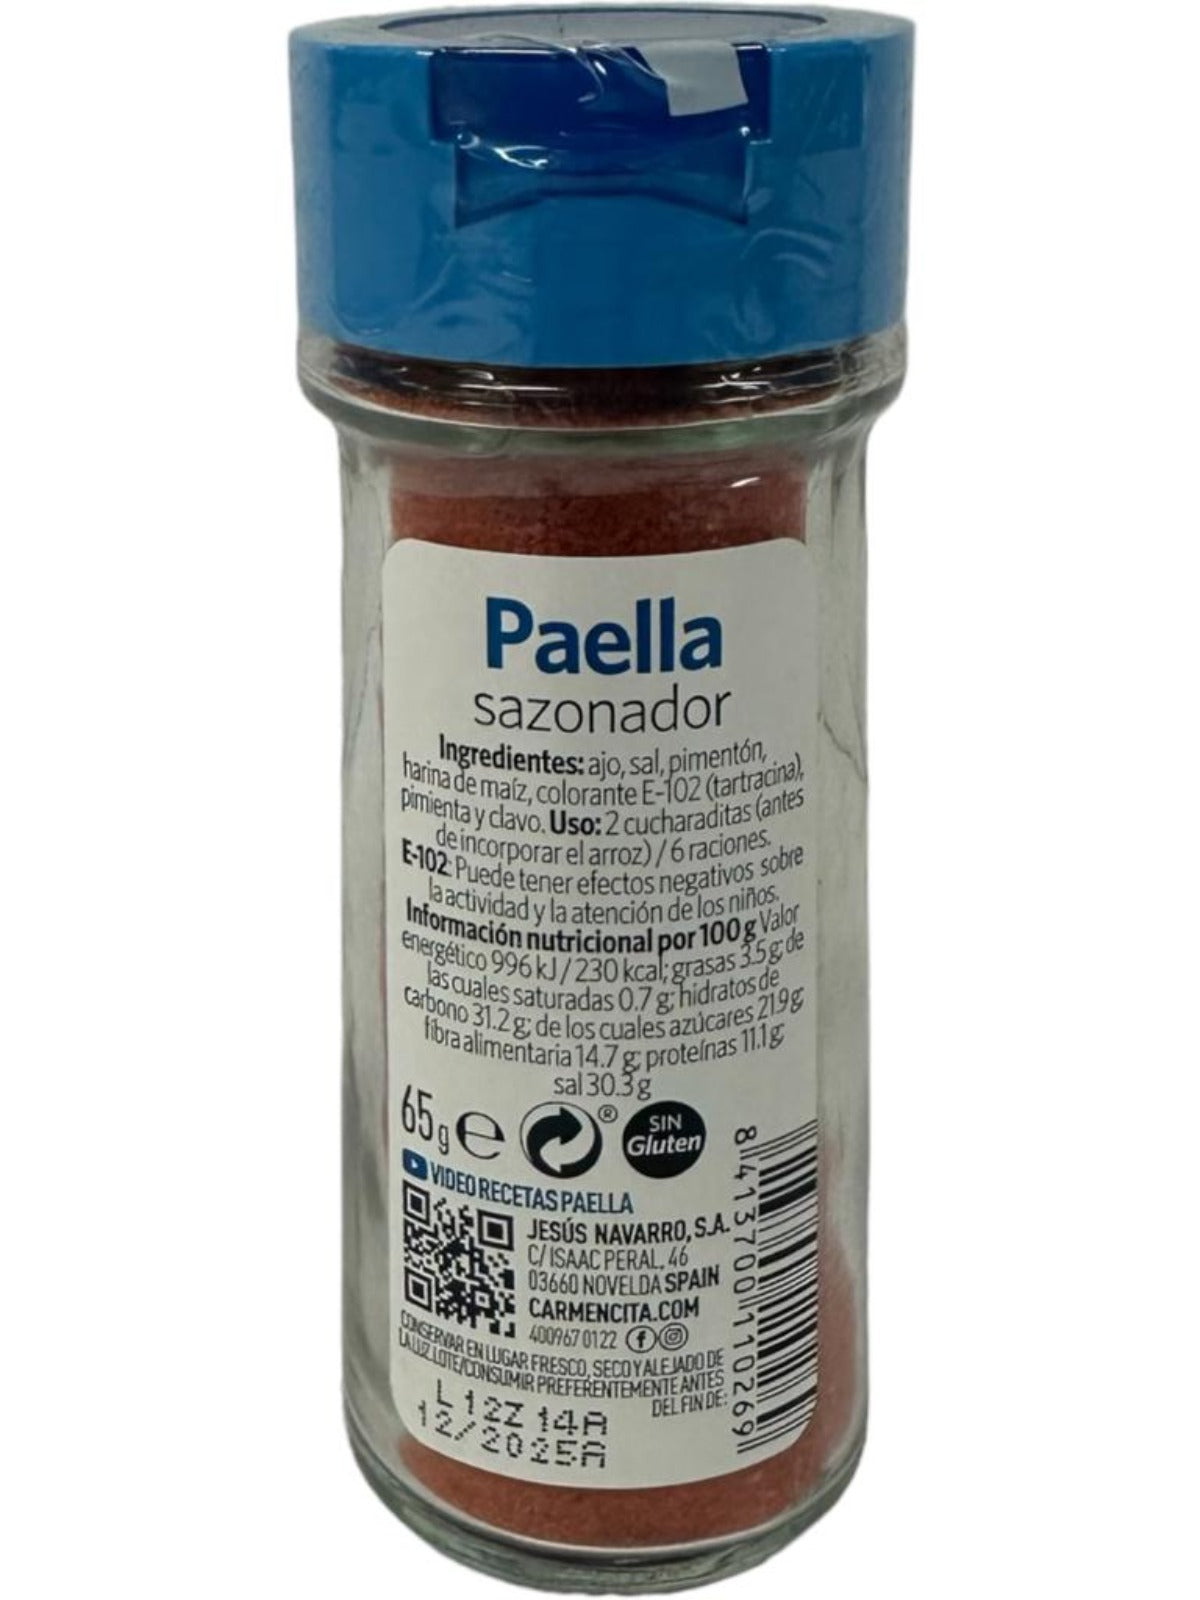 Carmencita Paella Seasoning 65g